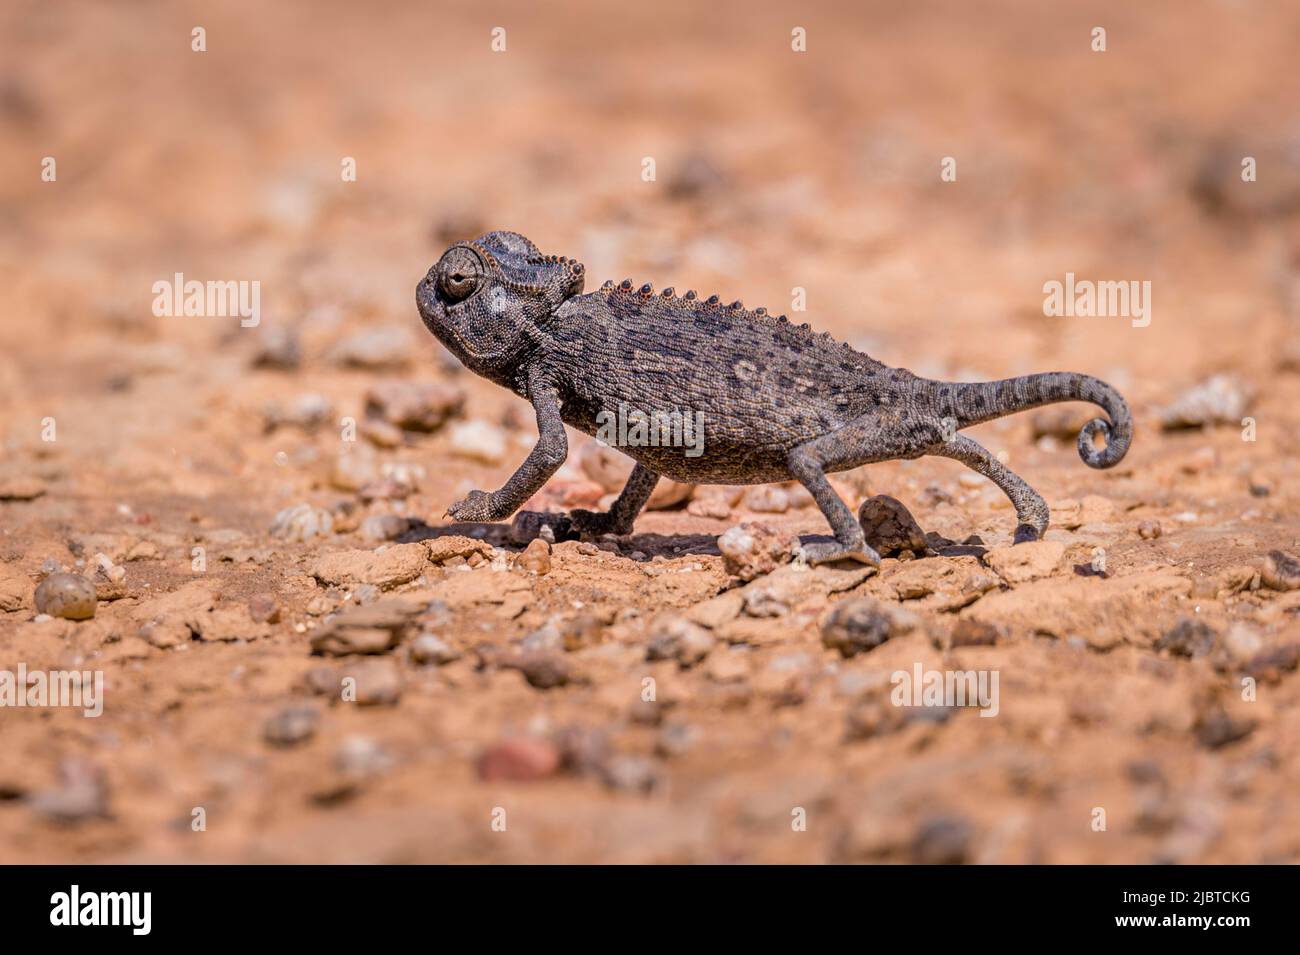 Namibia, Skeleton Coast, Erongo region, Swakopmund, Namib Desert, Namaqua Chameleon (Chamaeleo namaquensis) Stock Photo